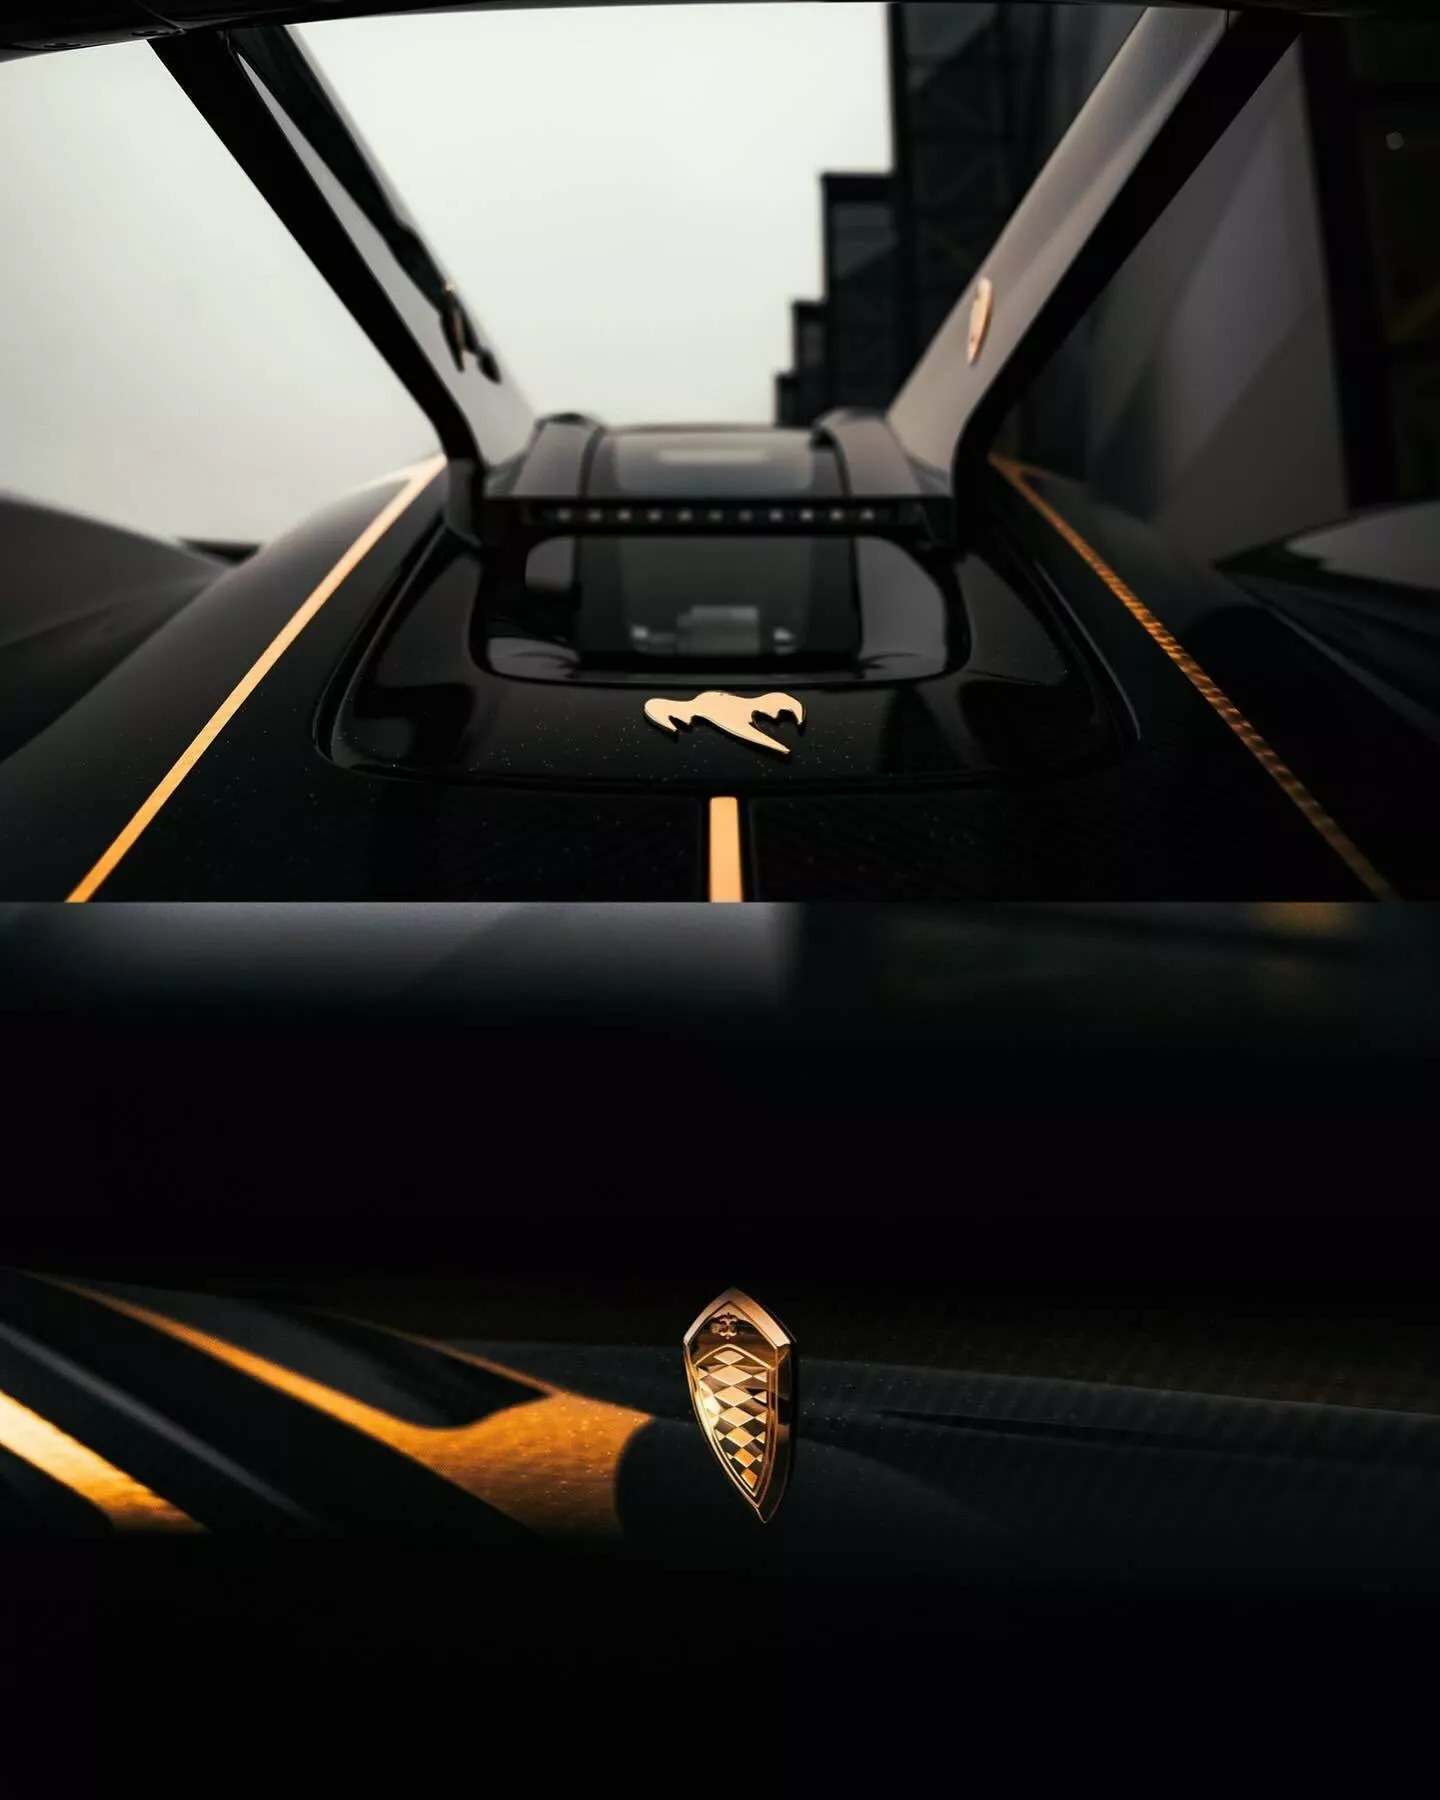 Đại gia bất động sản chơi siêu xe Koenigsegg khác người: Rắc bột vàng lên khắp vỏ carbon, mạ vàng 24k nhiều chi tiết ngoại thất- Ảnh 8.